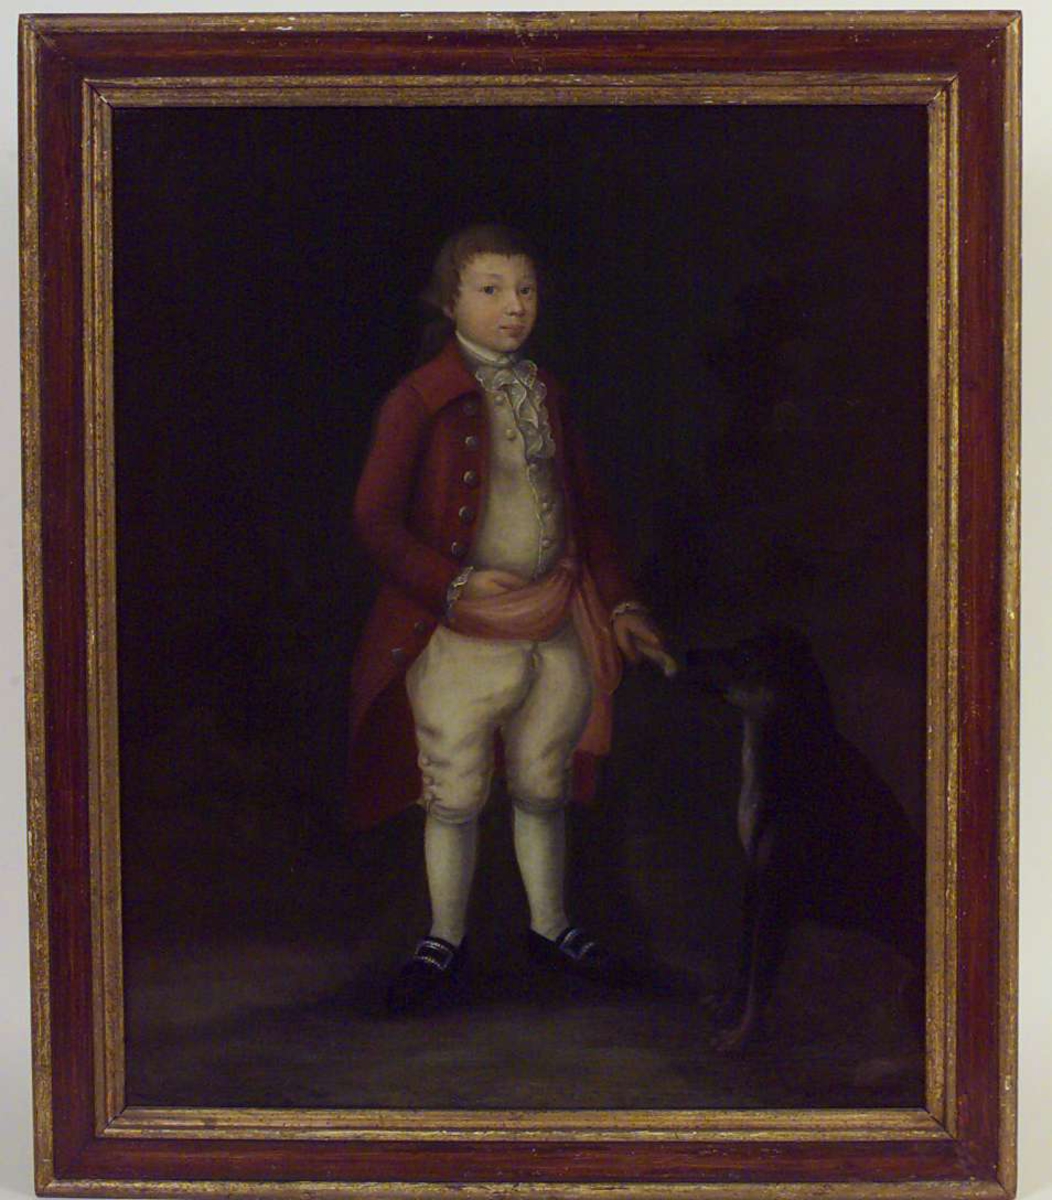 Barneportrett av Kield Hansen i 1700-tallsdrakt.